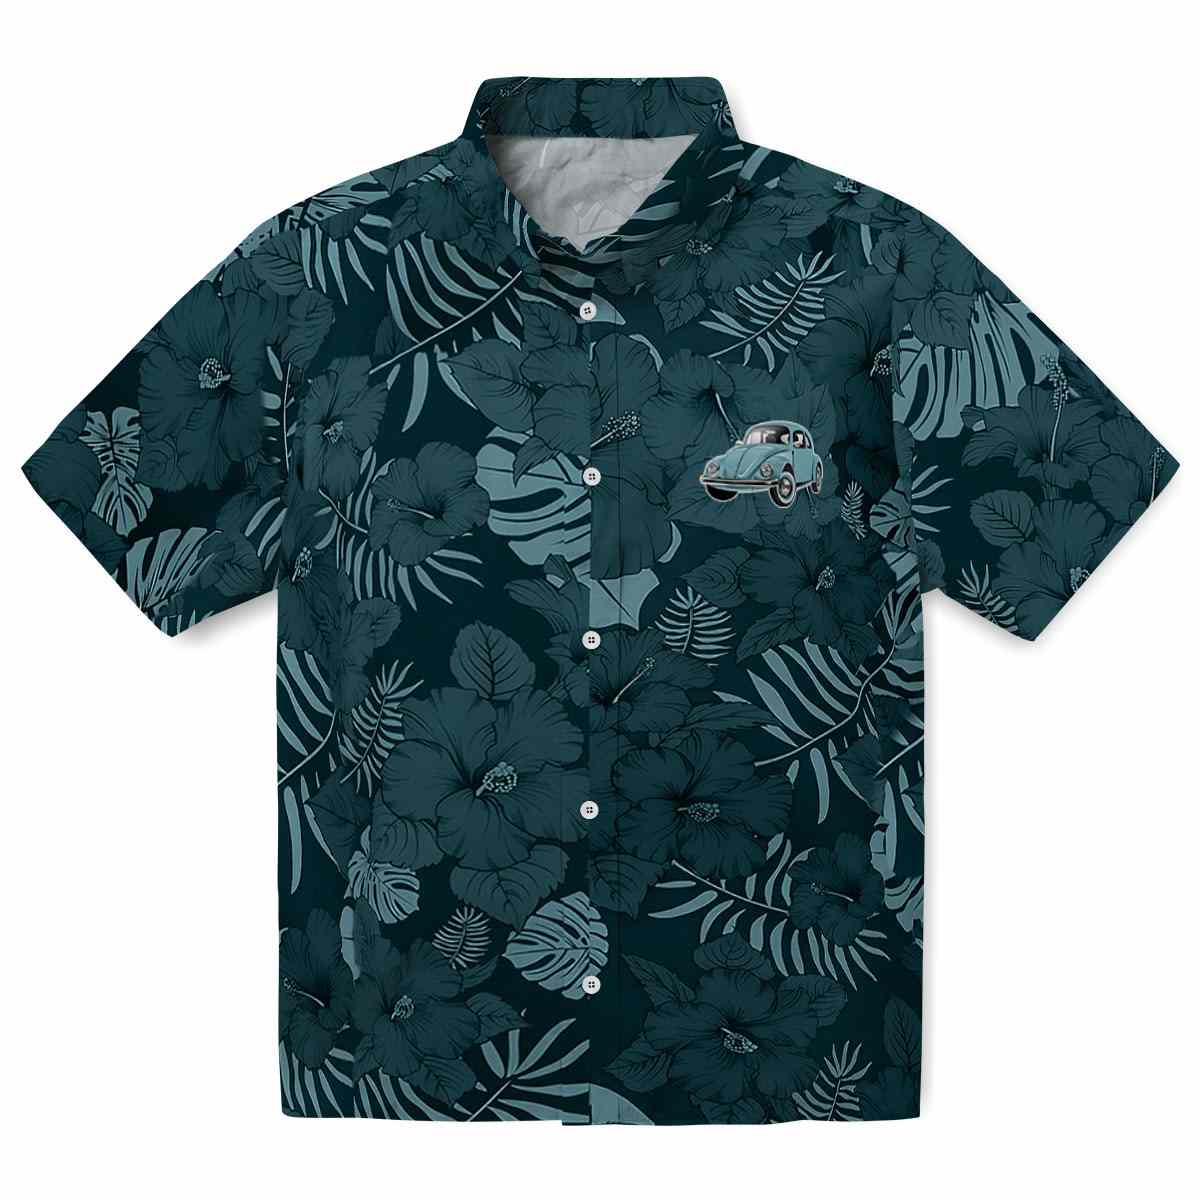 Car Jungle Vibes Hawaiian Shirt Best selling